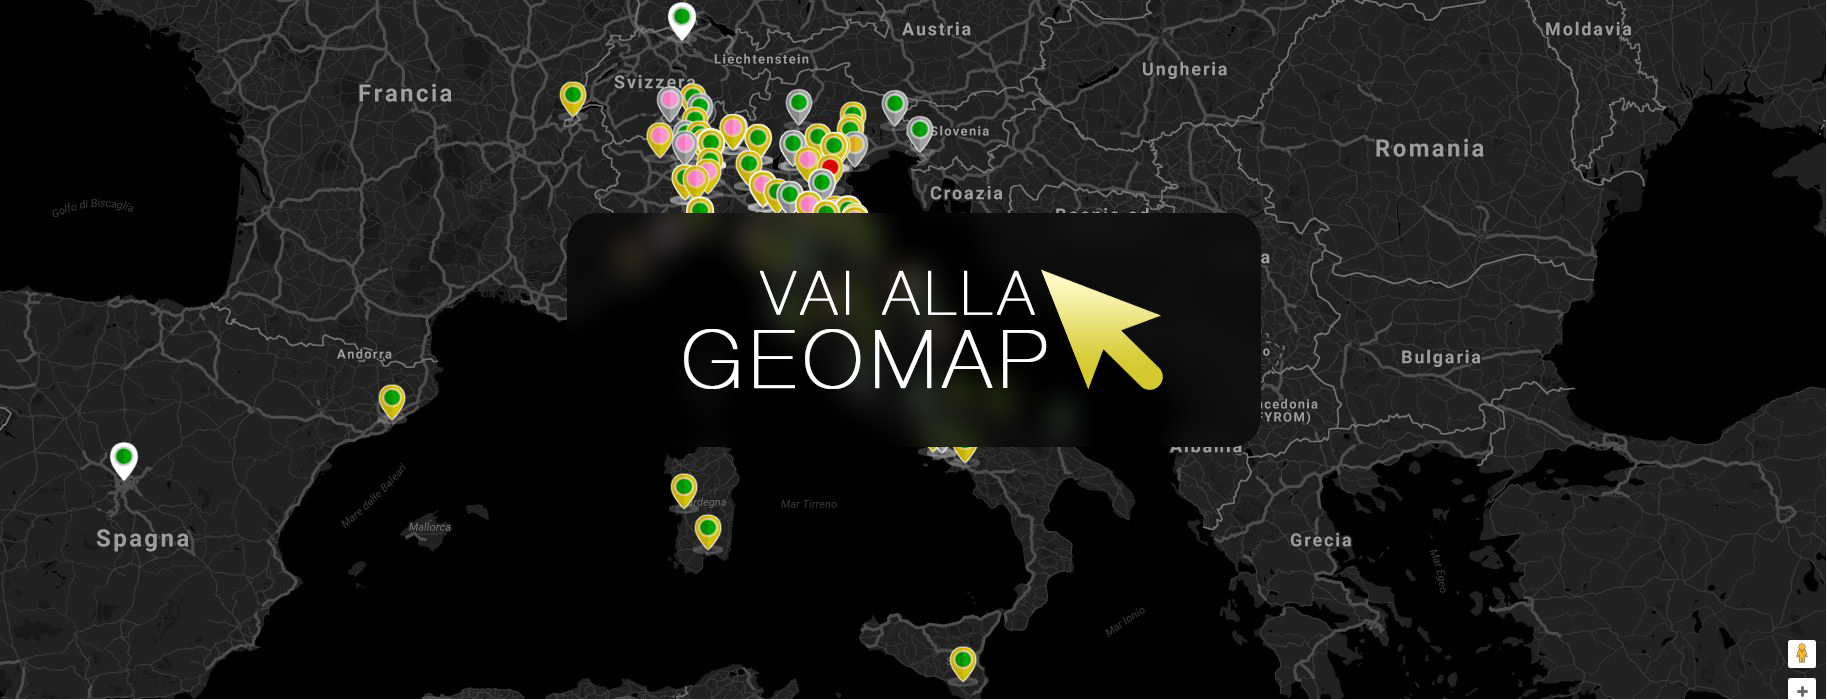 Guarda gli annunci a Valencia nella mappa intervattiva